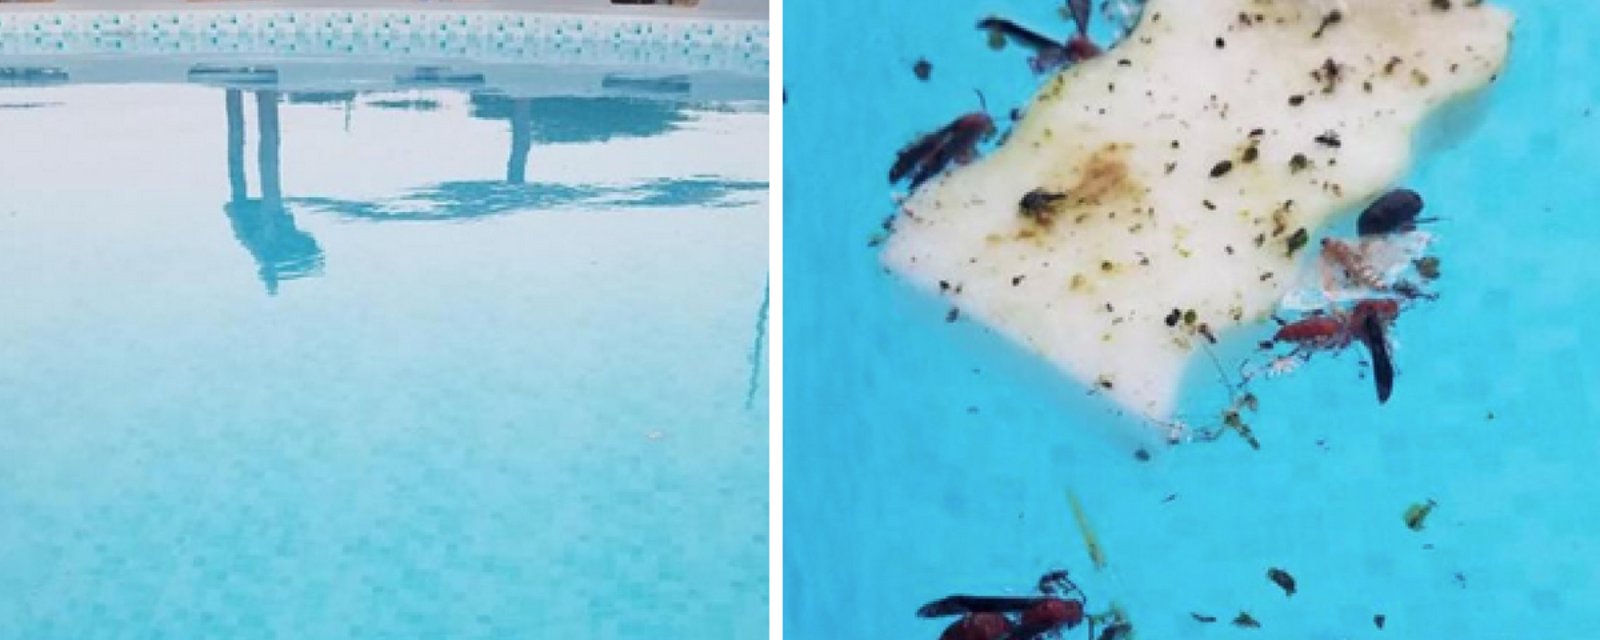 Le moyen le plus simple et le plus rapide de ramasser tous les insectes dans votre piscine